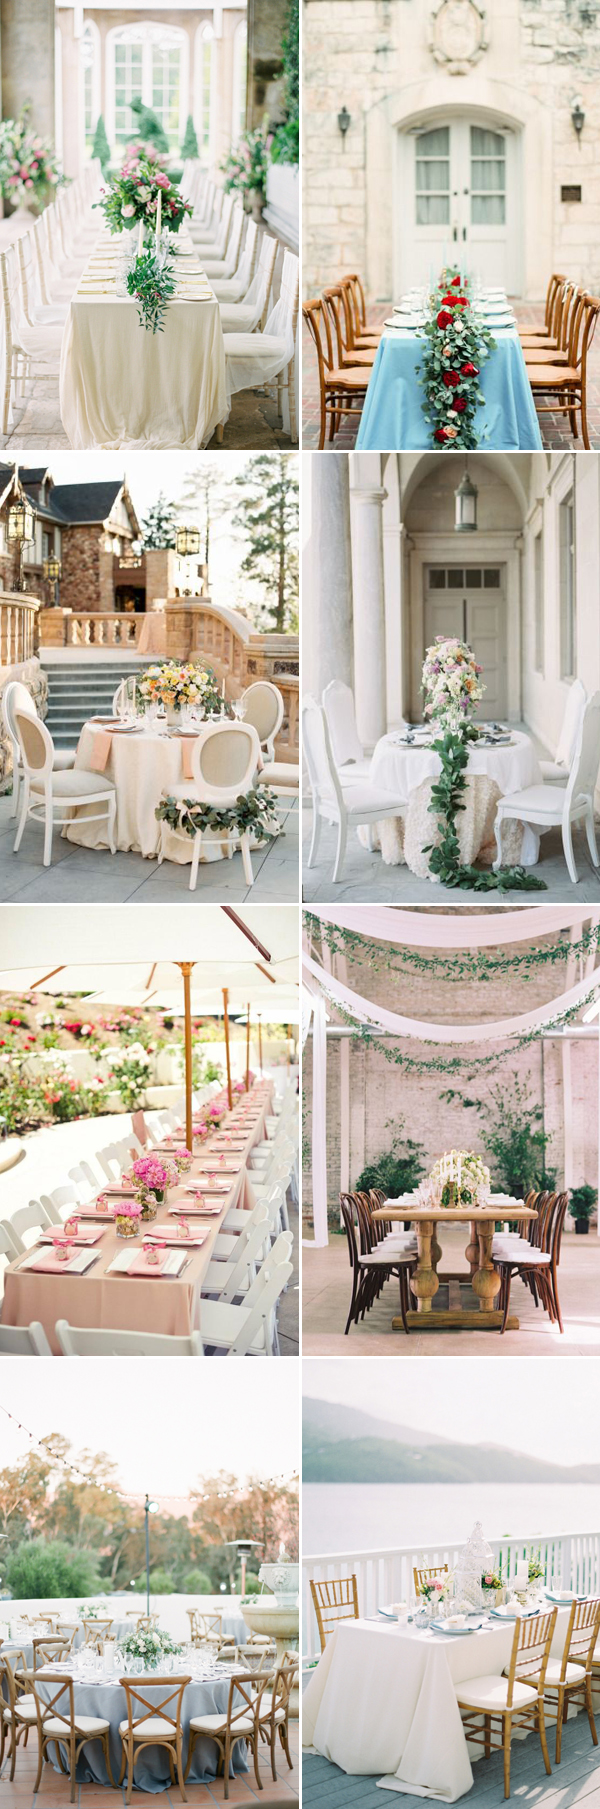 Private Villa Wedding Reception Decor Ideas